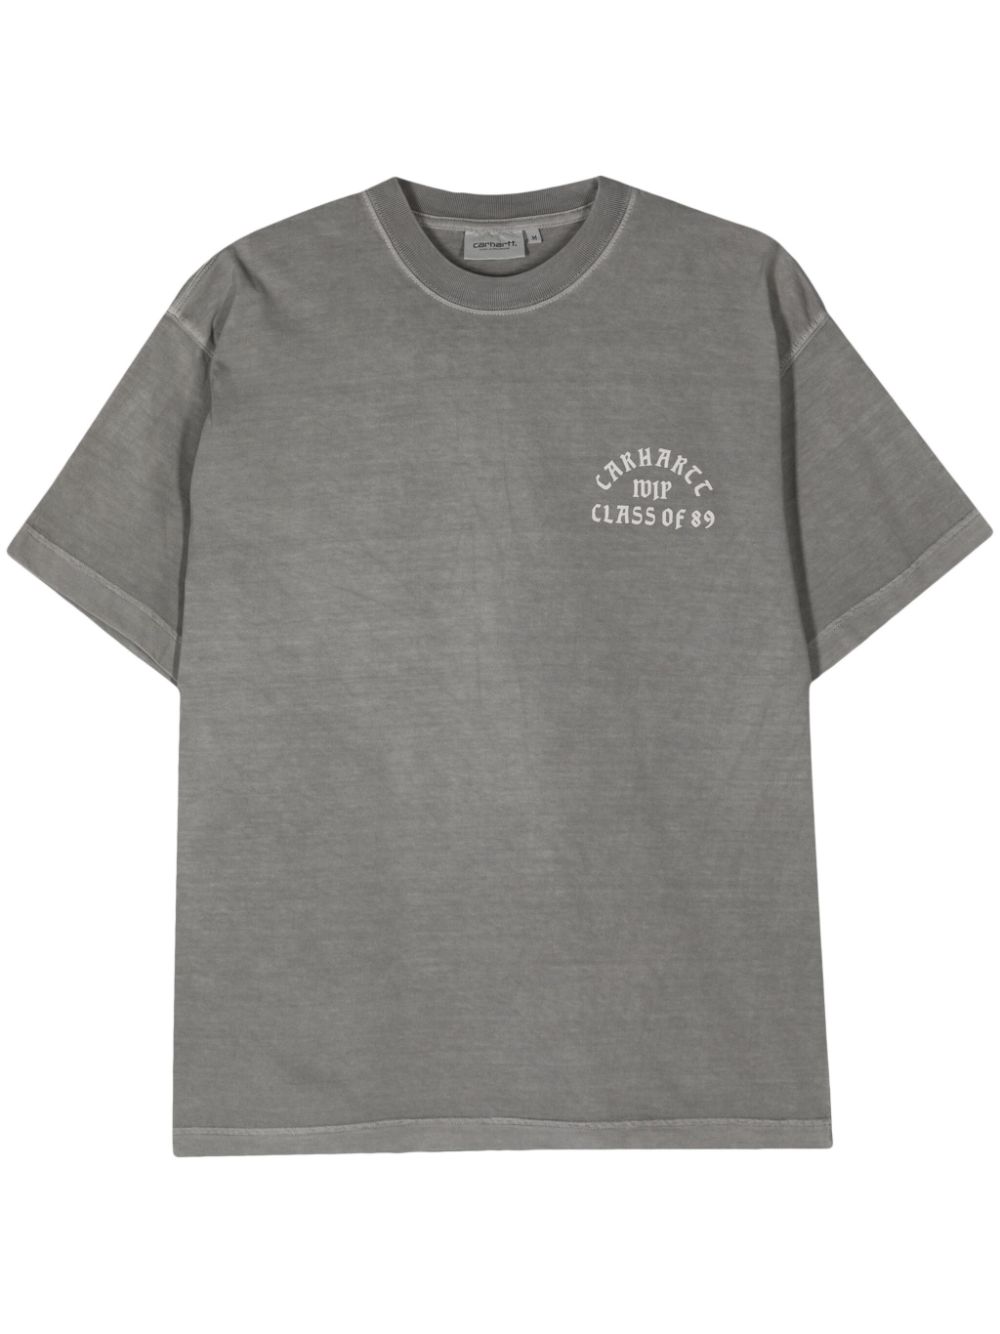 Carhartt WIP Class of 89 cotton T-Shirt - Grey von Carhartt WIP